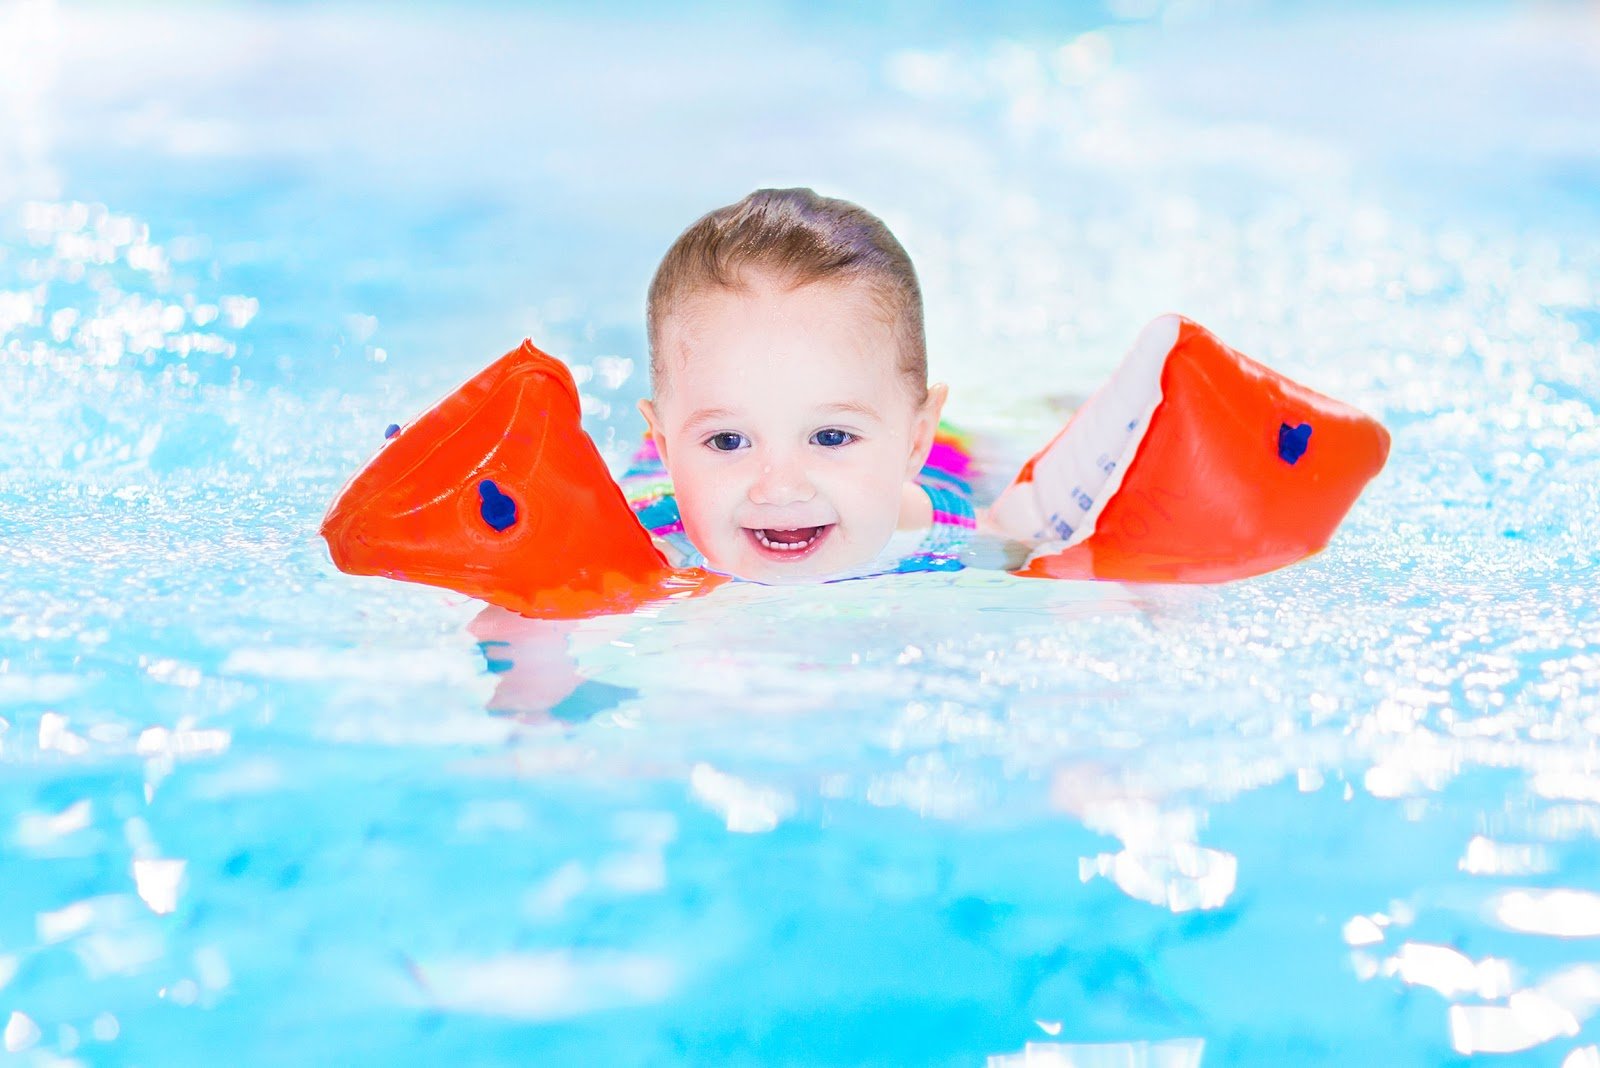 Toddler Using Floaties in Pool - Rising Sun Pools & Spas